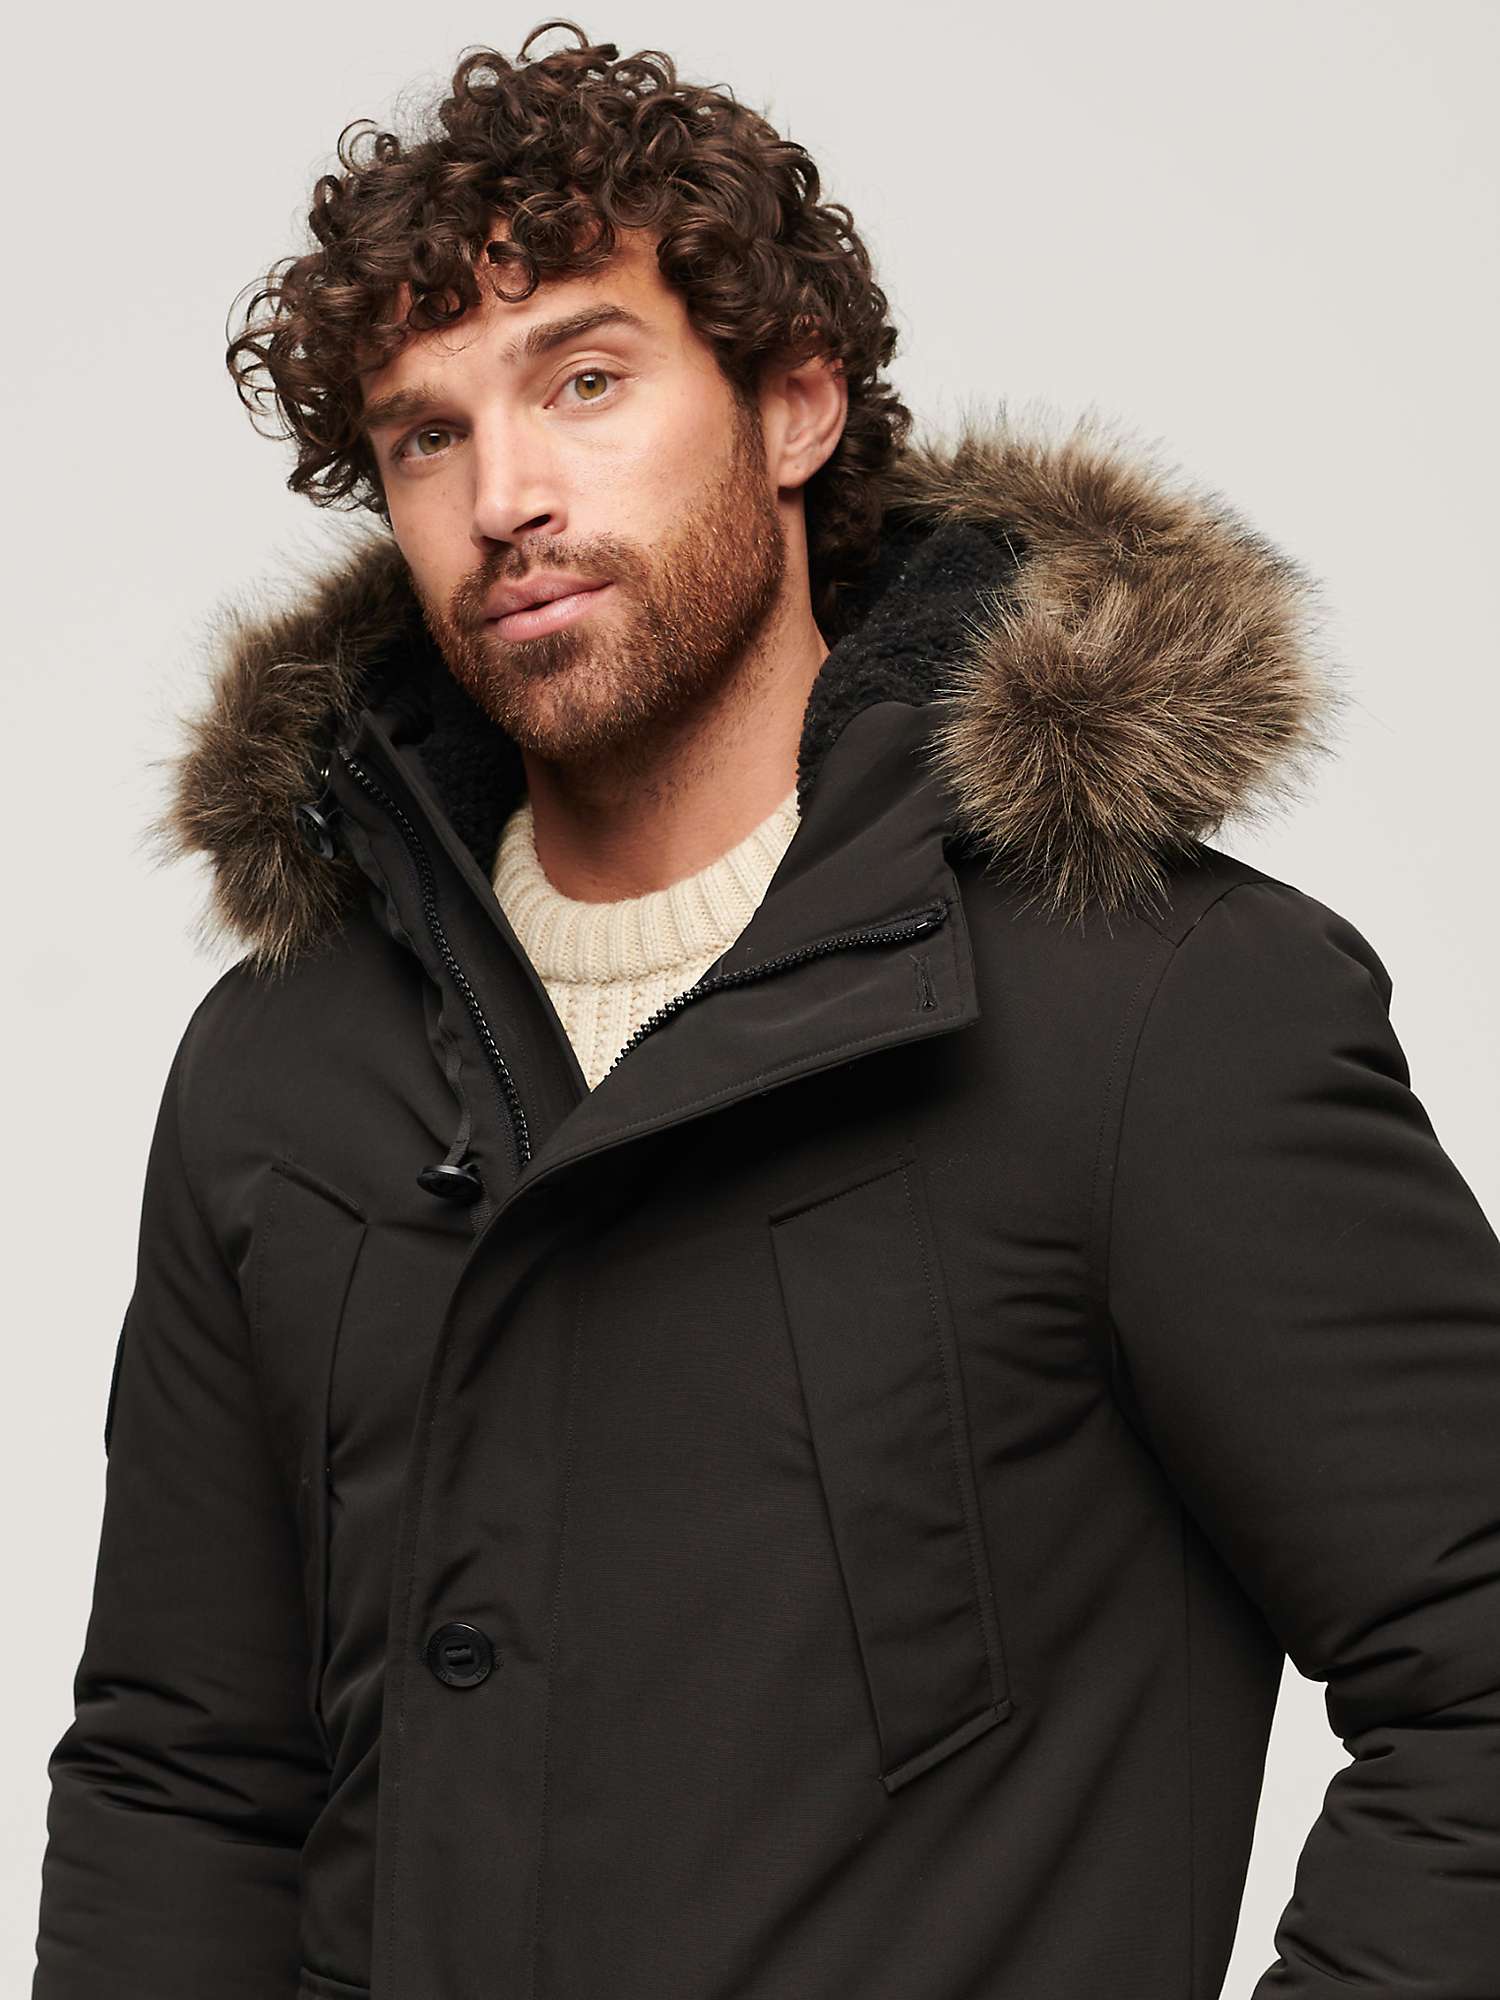 Buy Superdry Everest Faux Fur Hooded Parka Coat, Black Online at johnlewis.com